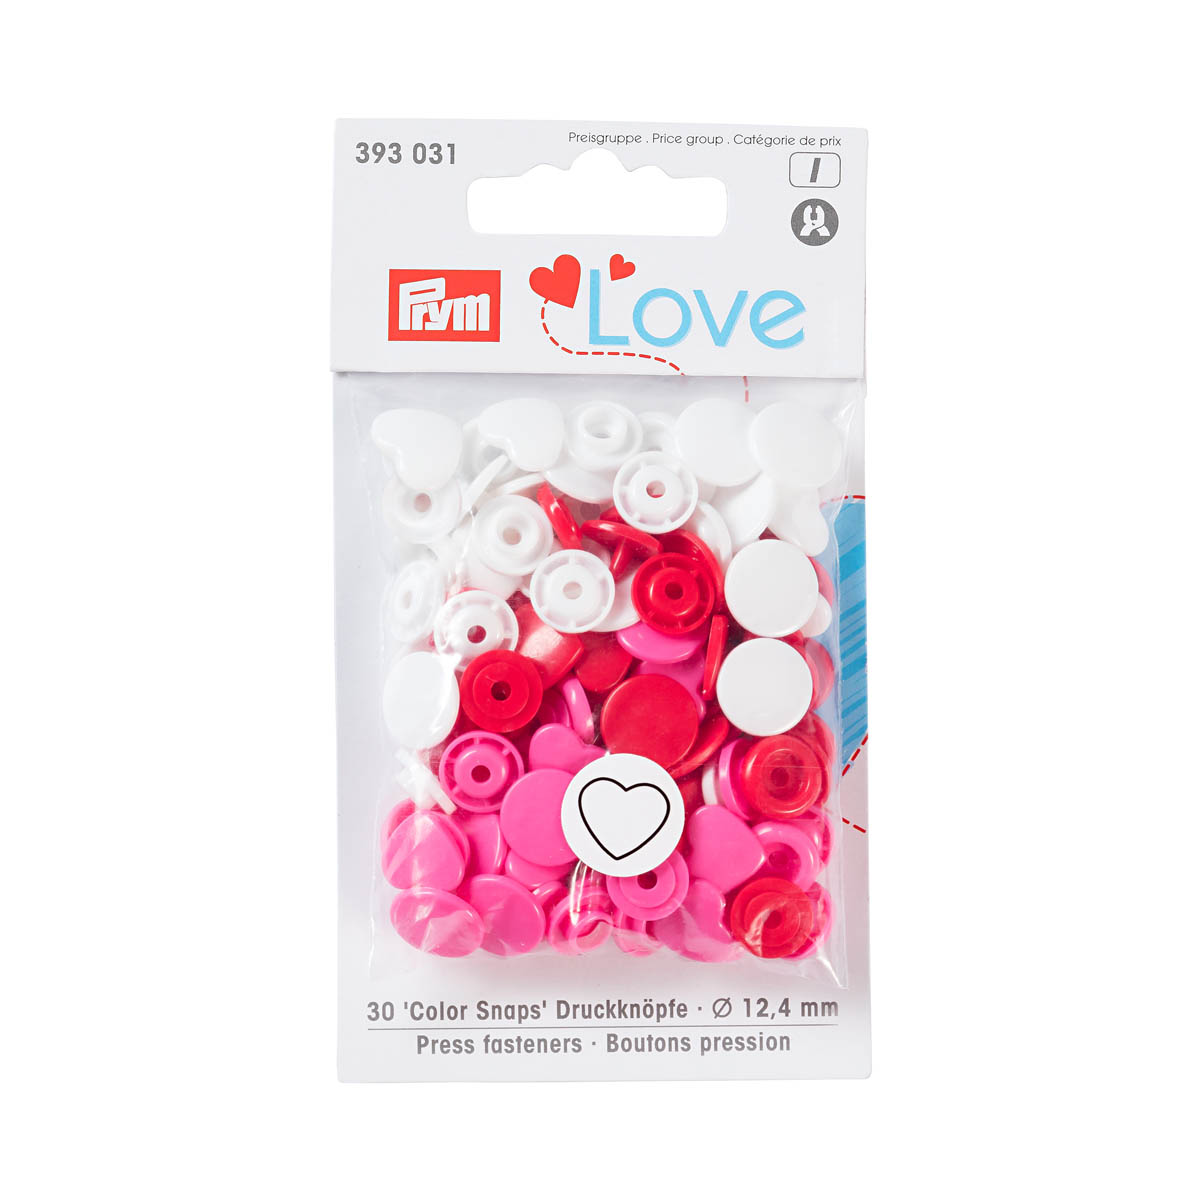 393031 Kнопки 'Сердце' Color Snaps Prym Love, красный/белый/розовый, 12мм, 30шт Prym